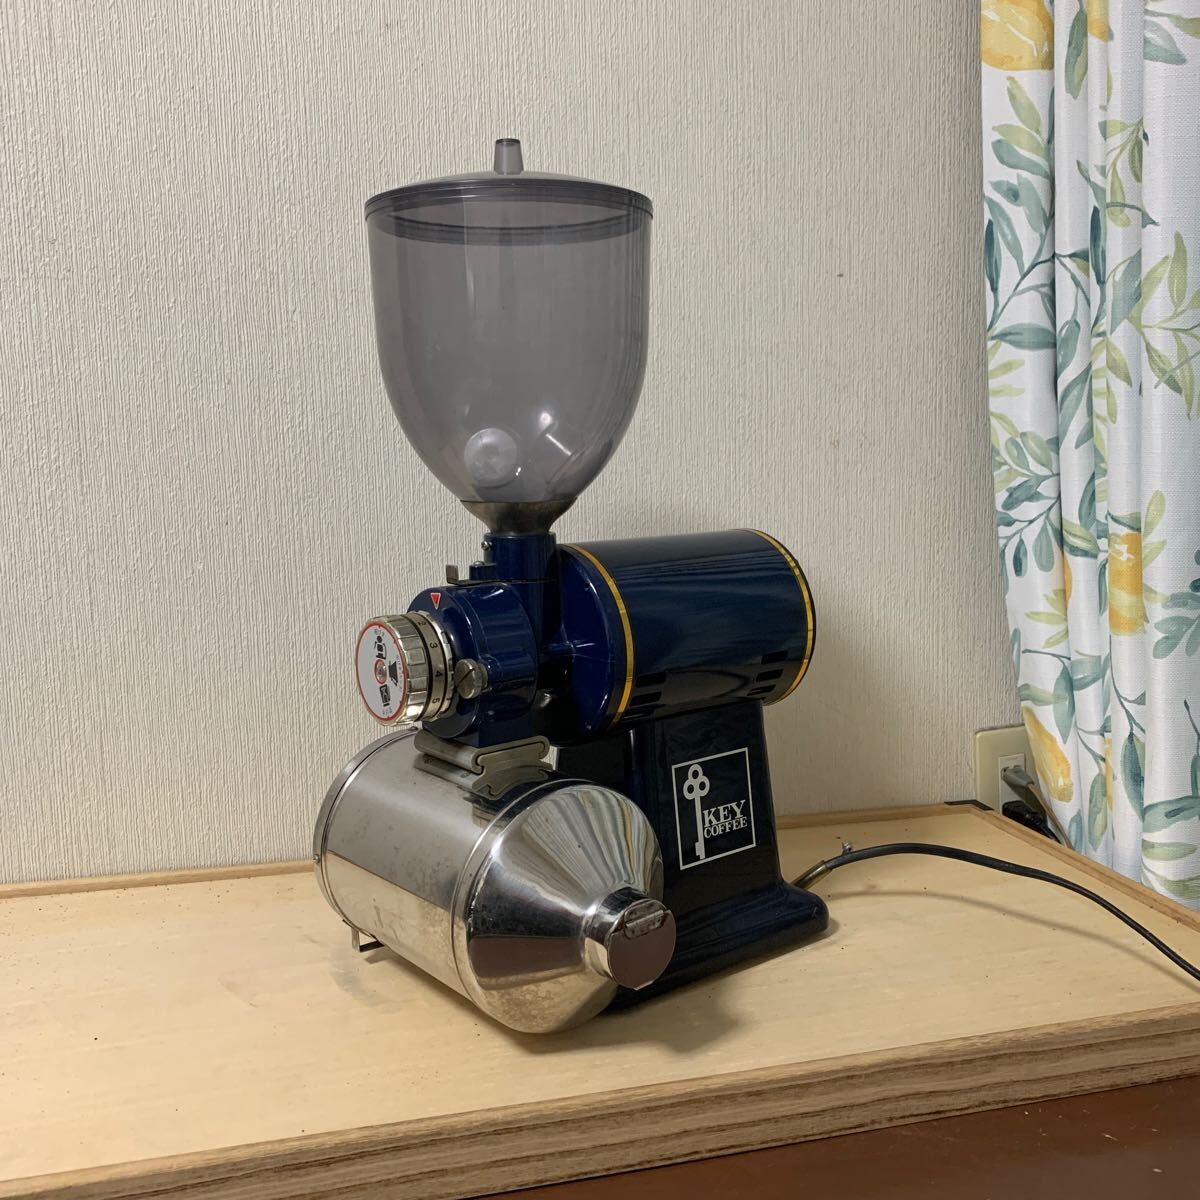  электрический кофемолка ценный KEYCOFFEE механизм перемещение товар для бизнеса голубой кофемолка высота примерно 52cm